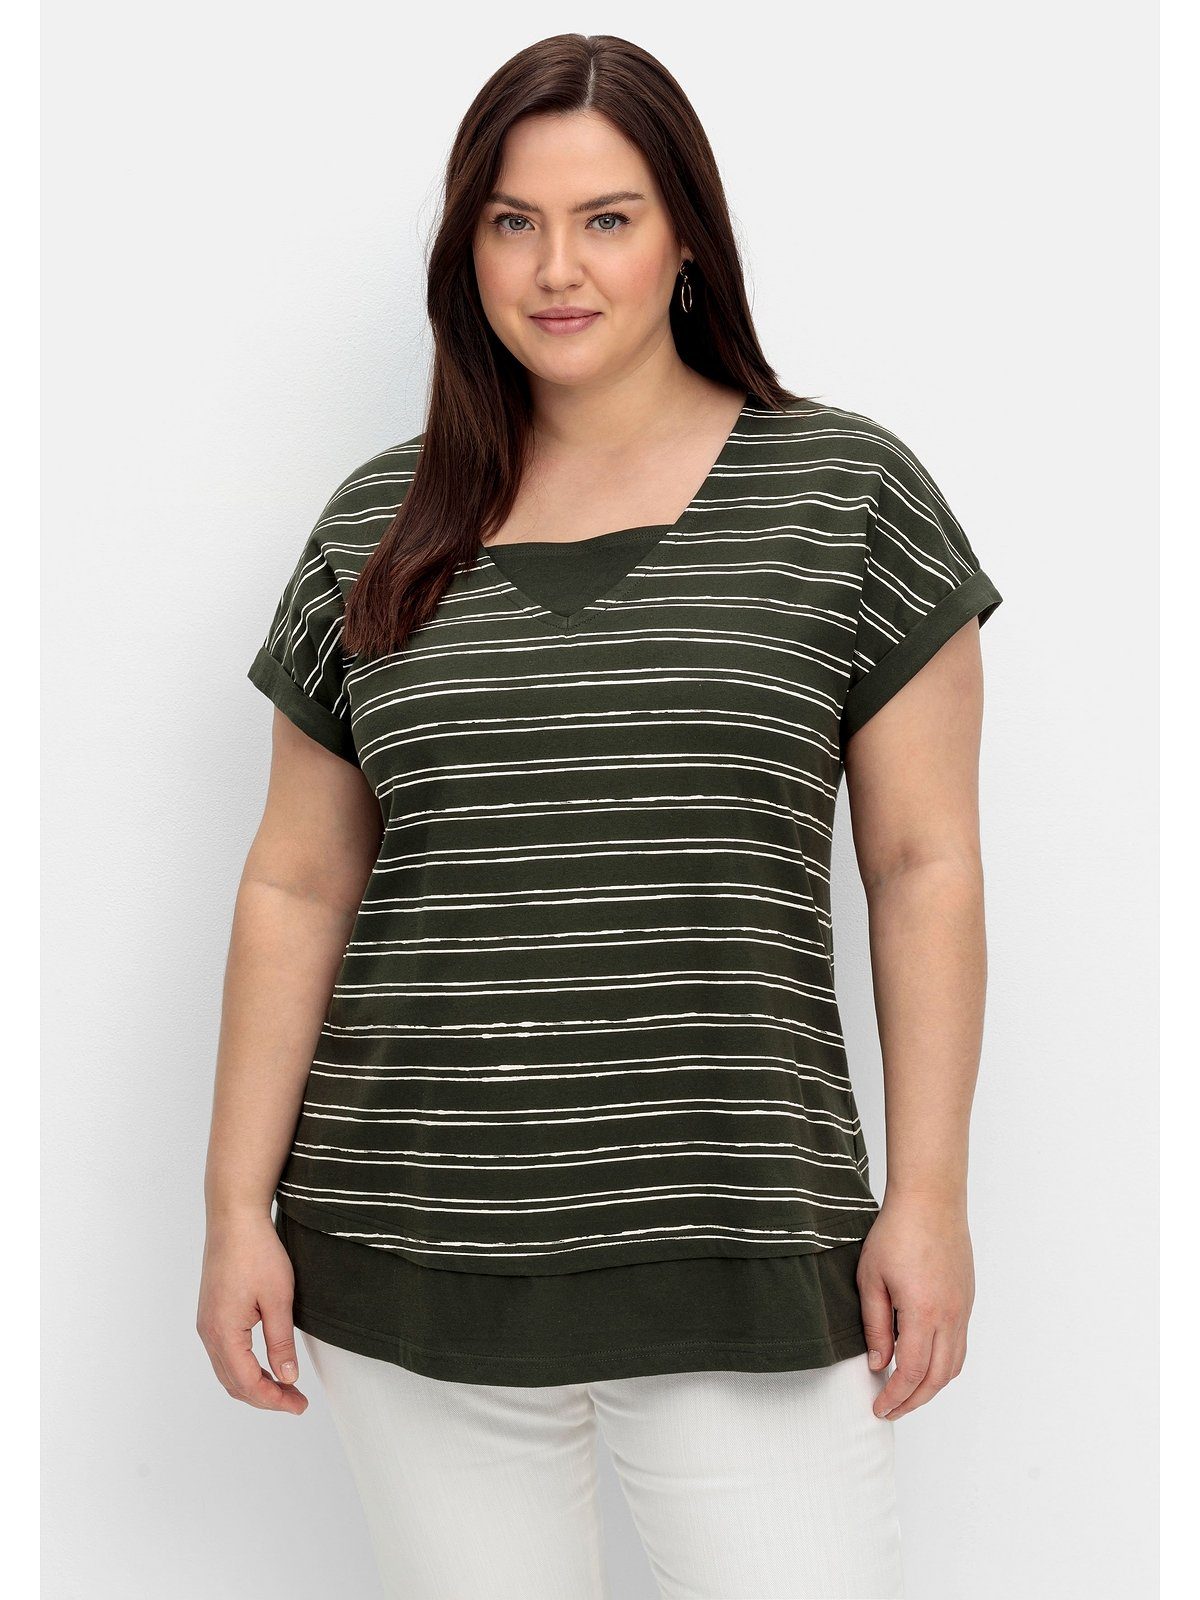 Sheego T-Shirt Große Größen im Lagenlook, aus reiner Baumwolle dunkeloliv gestreift